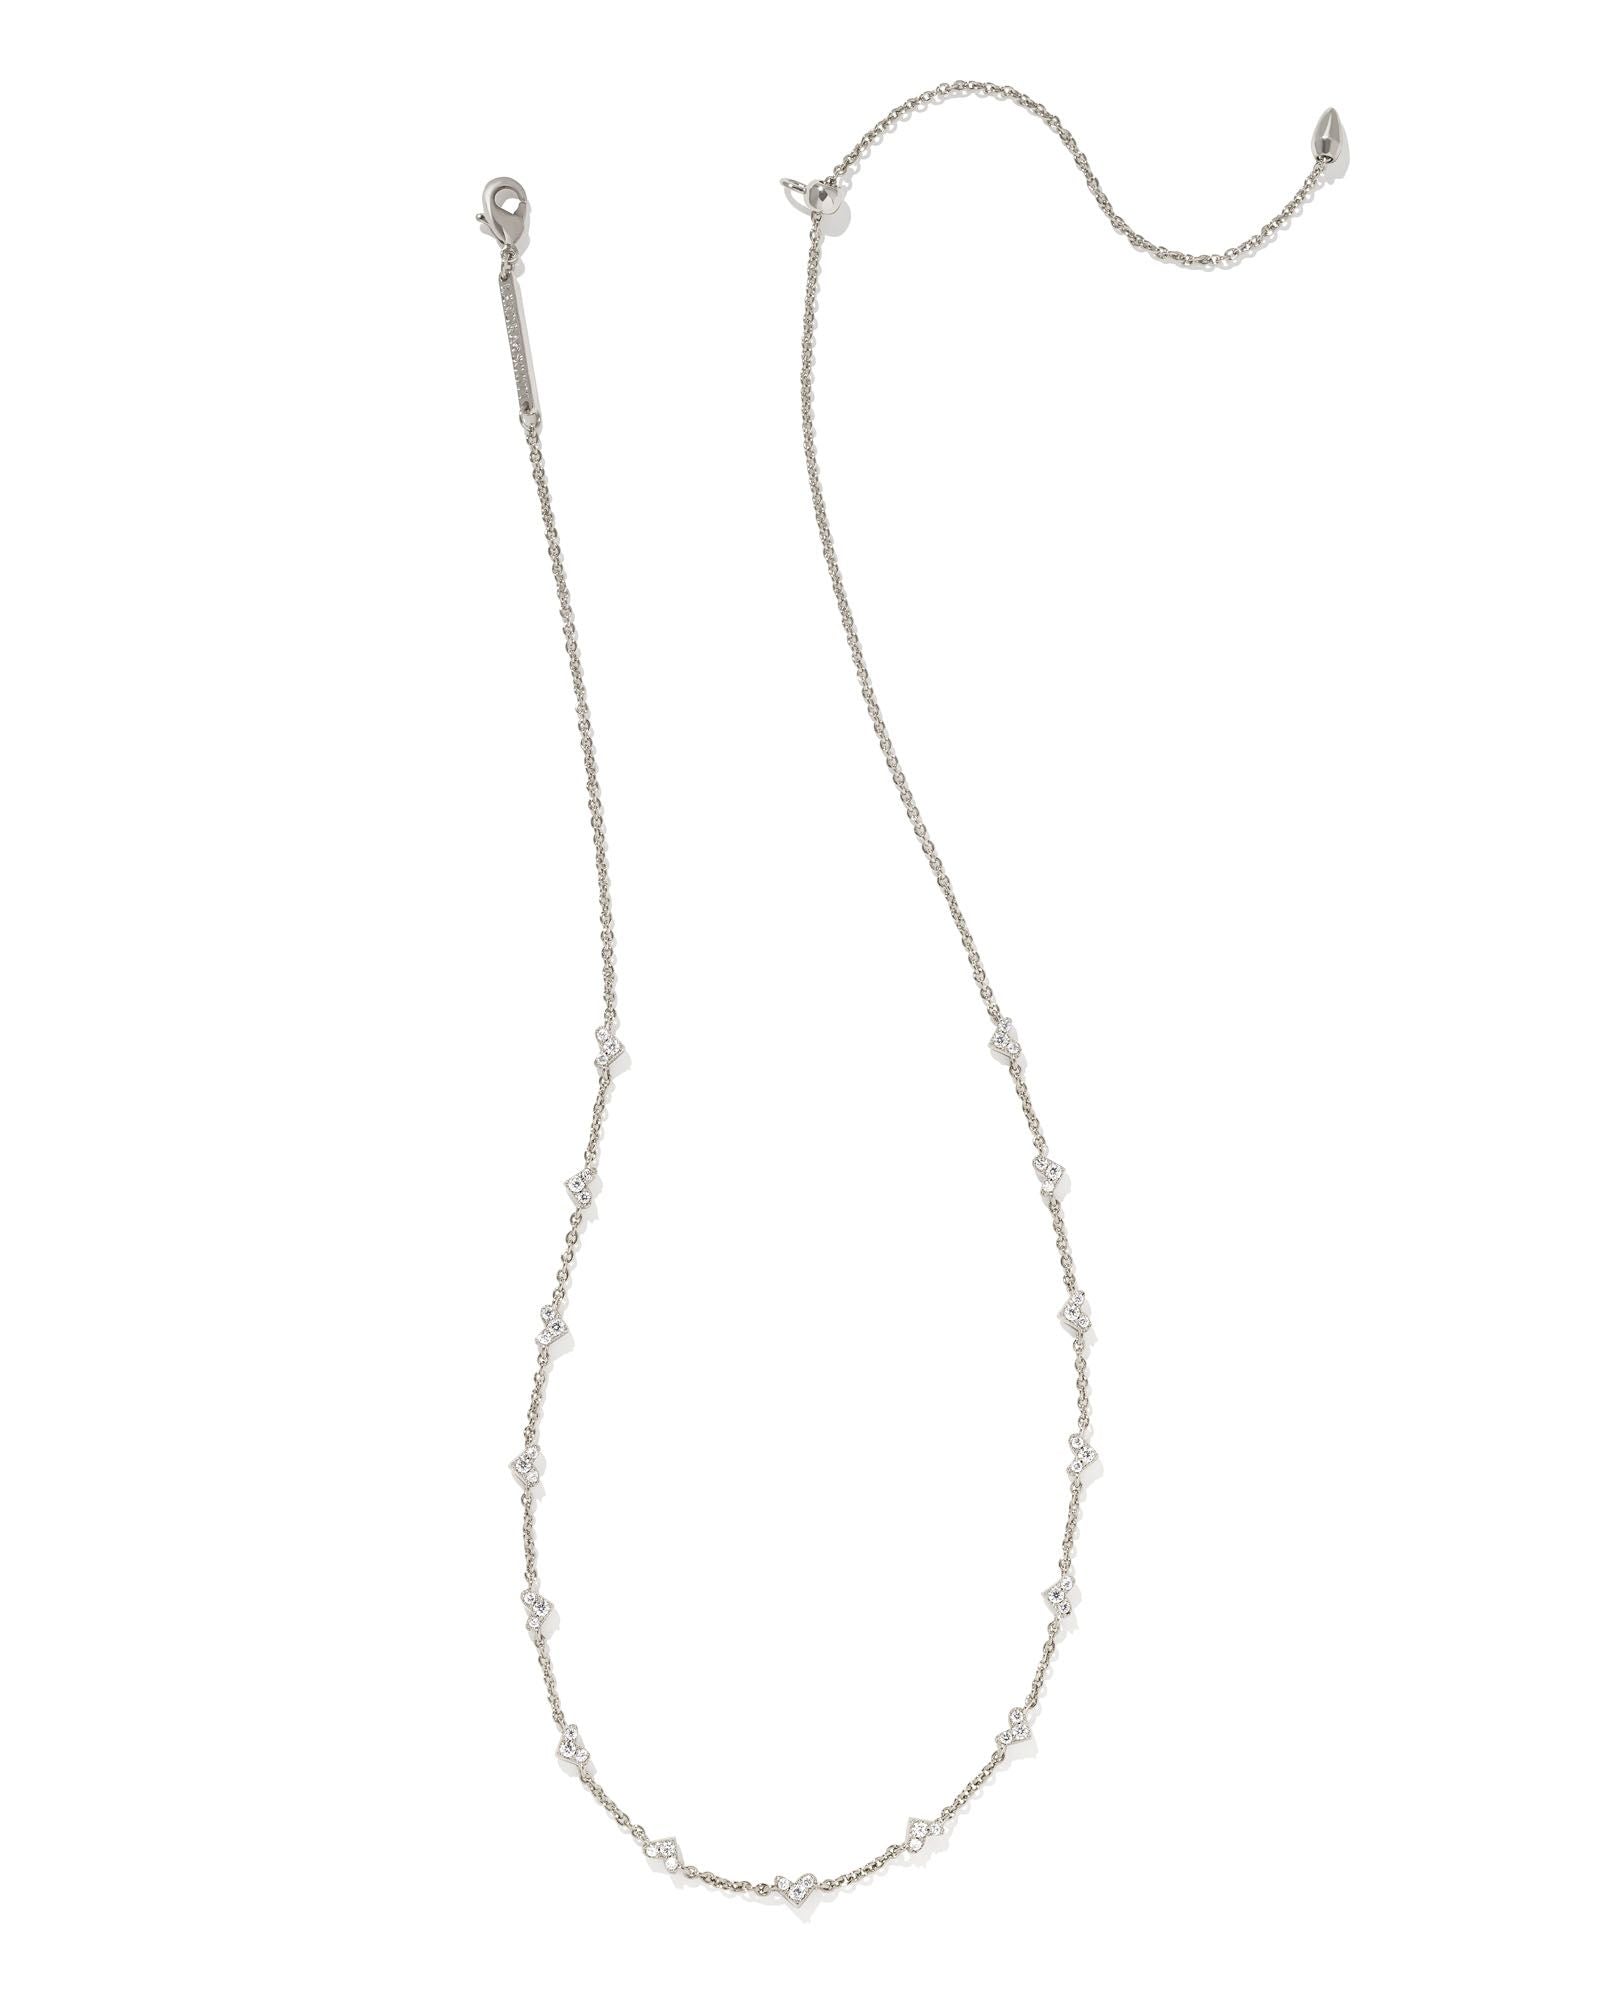 Kendra Scott Heart Necklaces for Women | Mercari